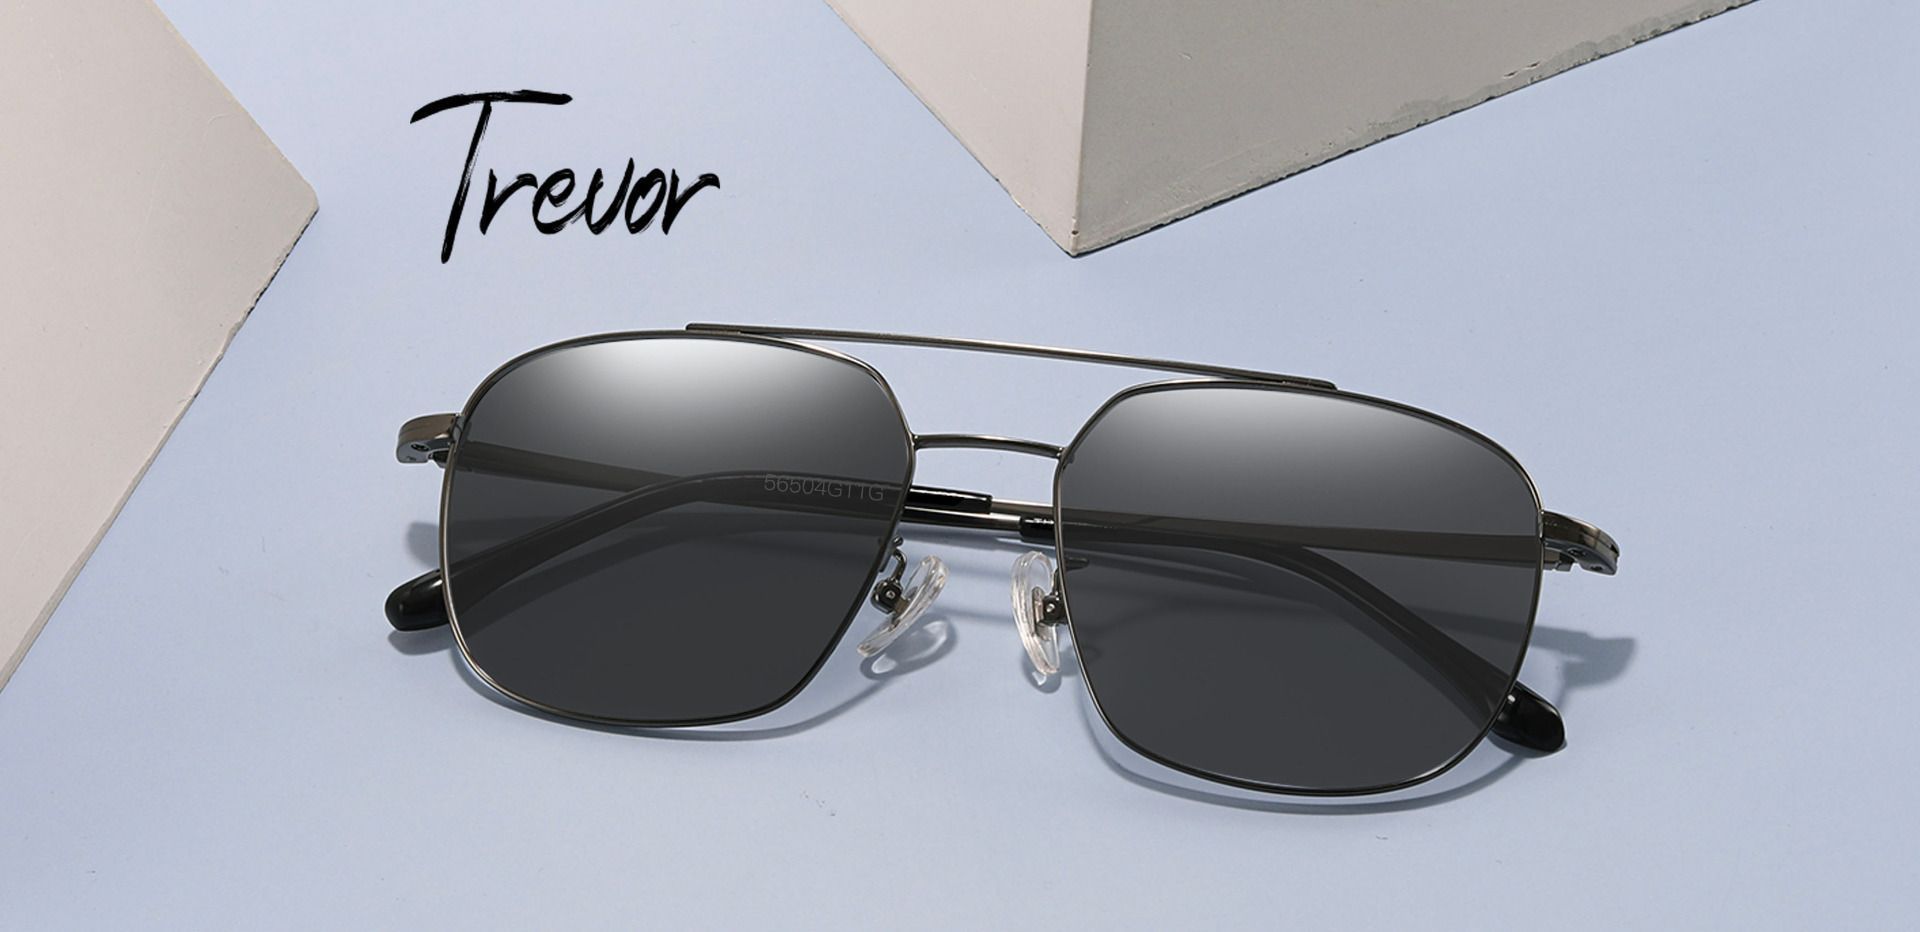 Trevor Aviator Lined Bifocal Sunglasses - Gray Frame With Gray Lenses